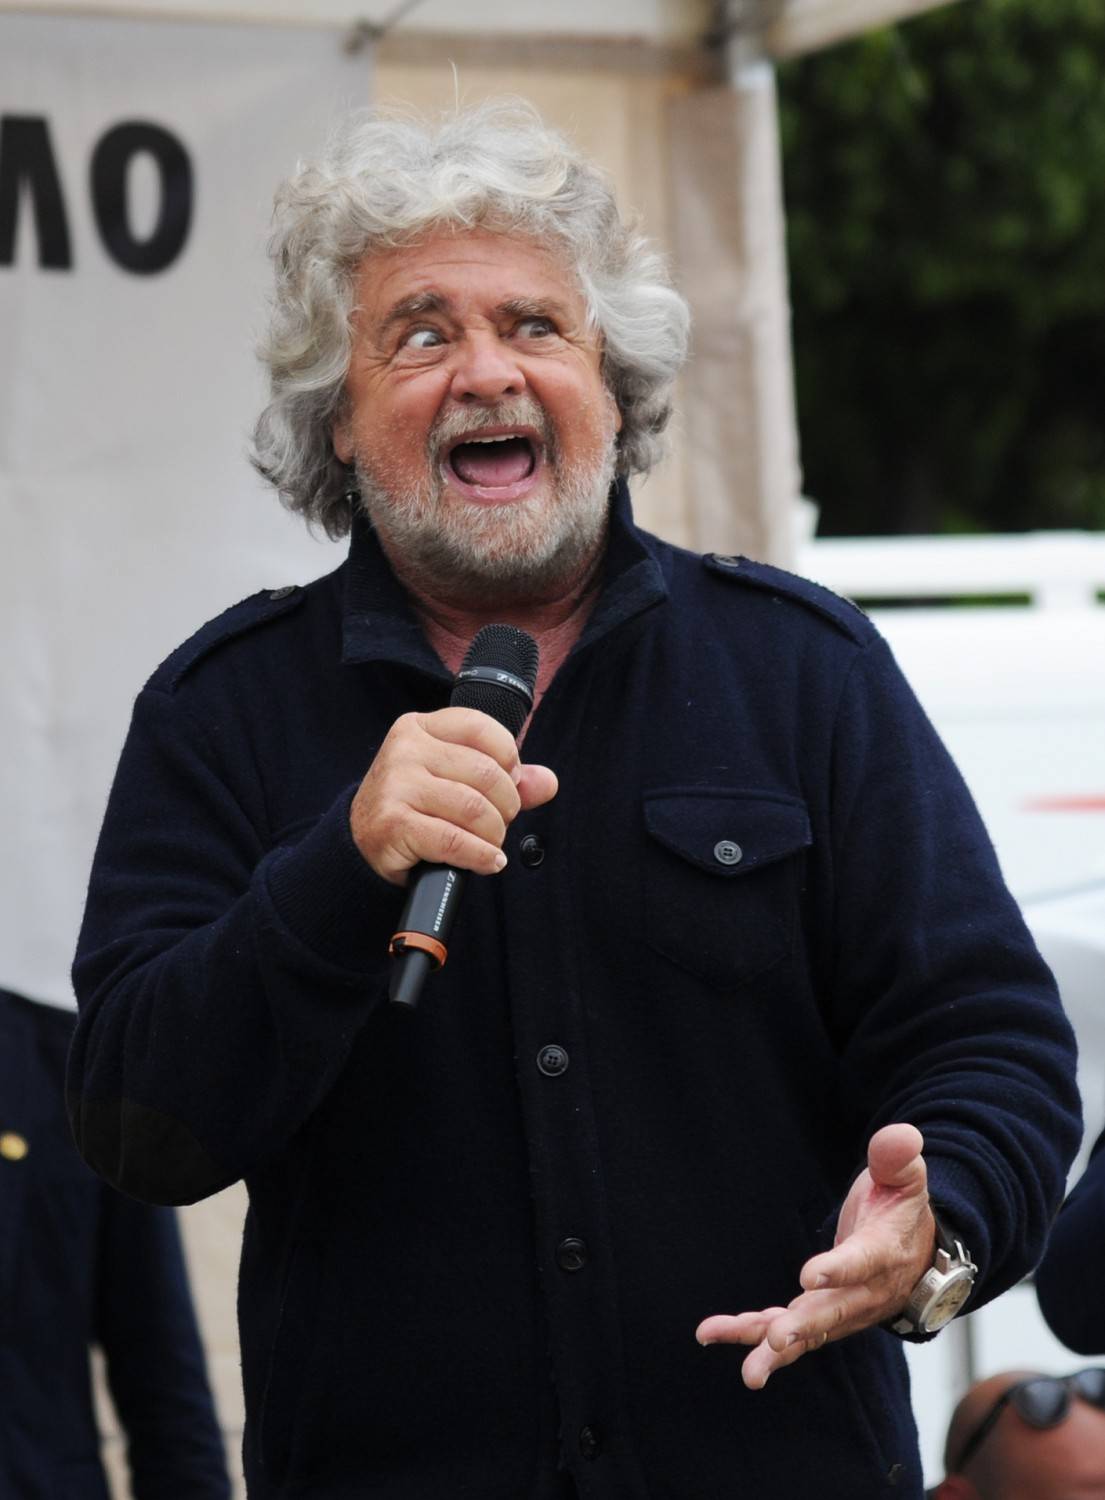 La scalata di Grillo al Pd: "Avete buttato la sinistra"